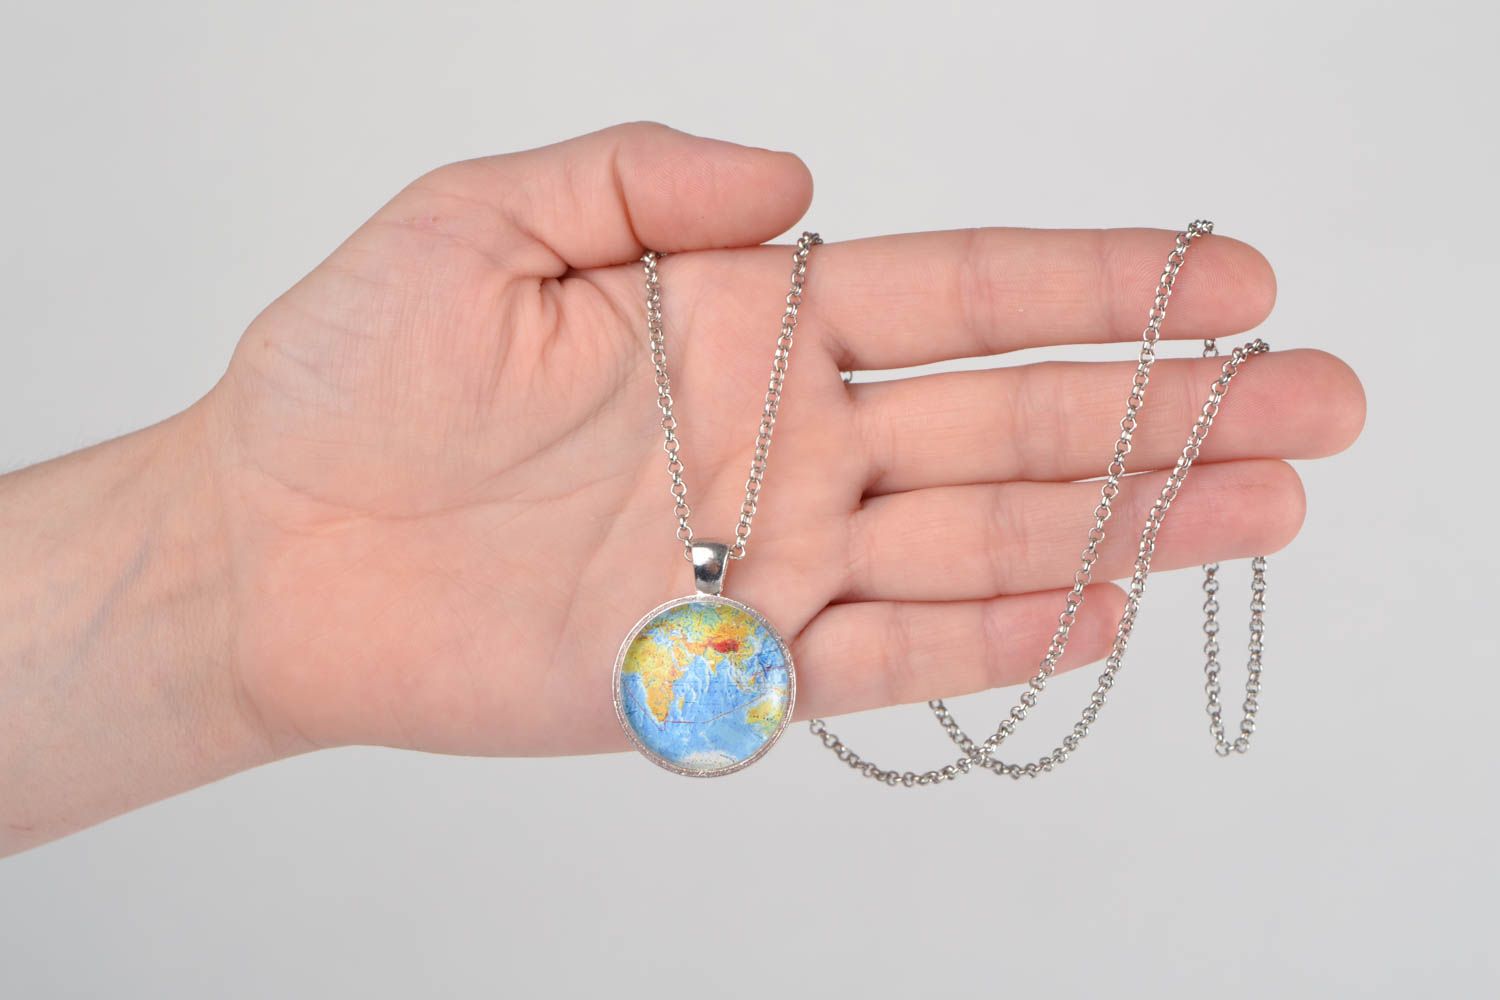 Авторский кулон с изображением полушария Земли стеклянный на цепочке хэнд мэйд фото 2